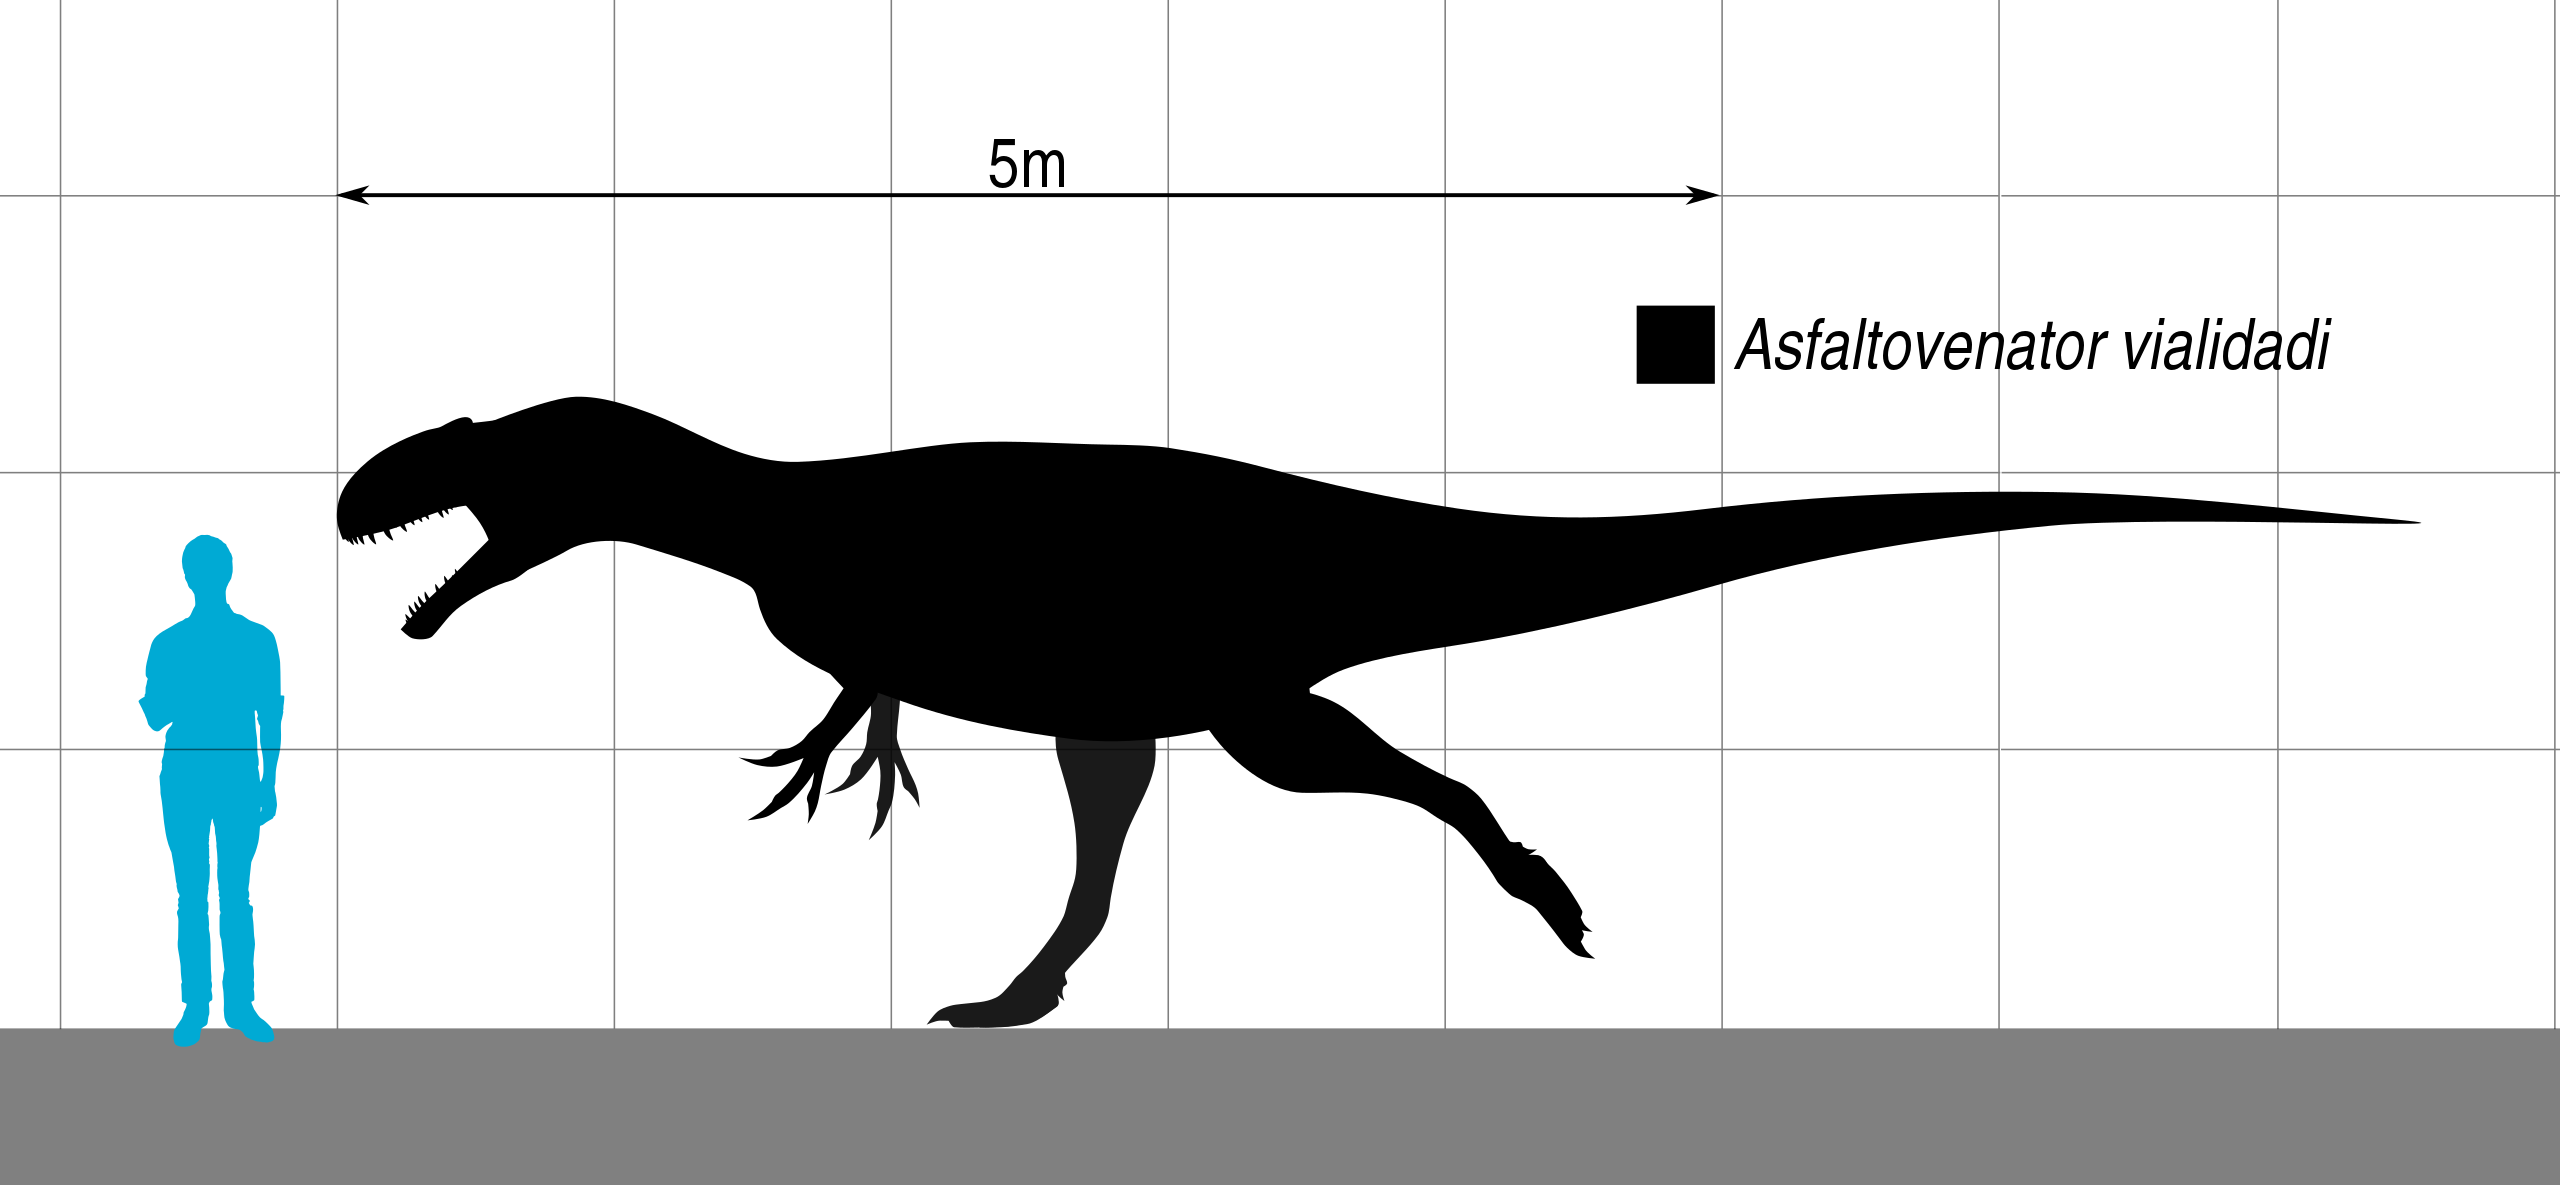 Zástupci rodu Asfaltovenator byli velcí teropodi, patřící ve svých ekosystémech k dominantním predátorům. Typový exemplář pravděpodobně dosahoval délky v rozmezí 7 až 8 metrů a velikostně se tedy vyrovnal například menším jedincům populárního severoa